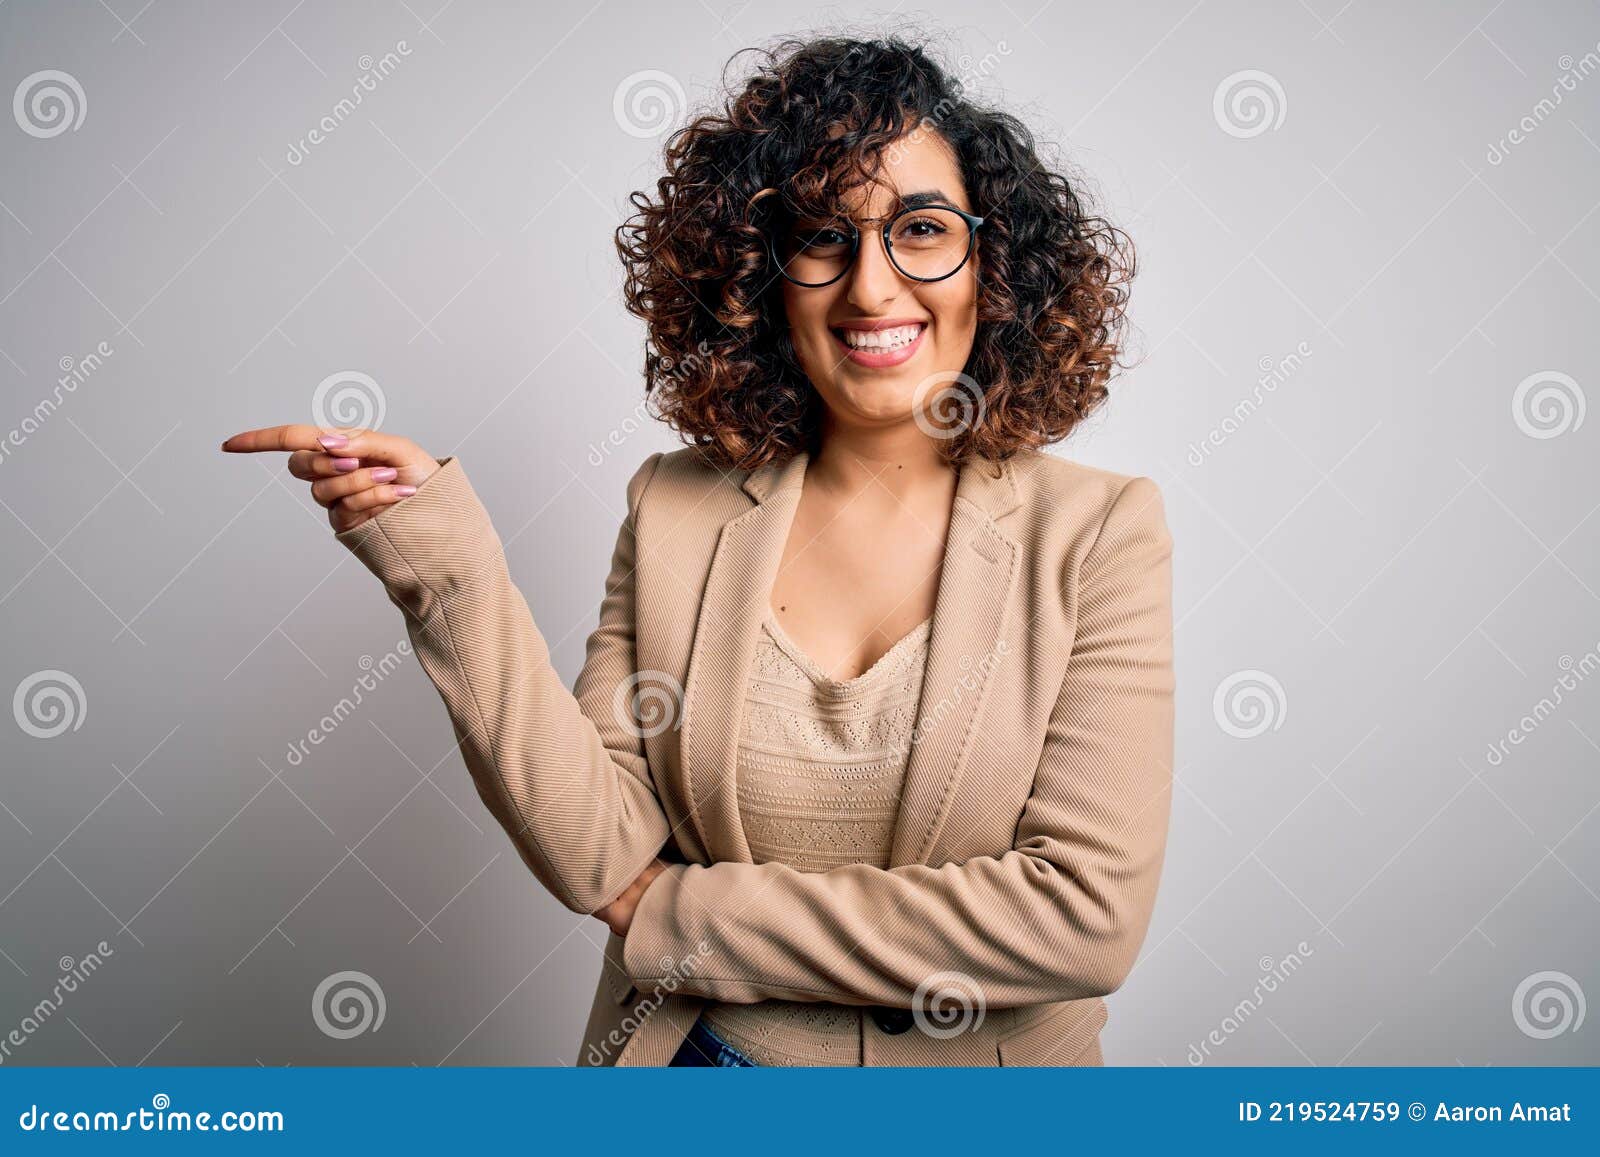 Junge Lockige Arabische Geschäftsfrau Trägt Elegante Jacke Und Brille über Weißen Mit Einem Großen Lächeln Auf Gesicht Stockbild - Bild von jacke, überzeugt: 219524759